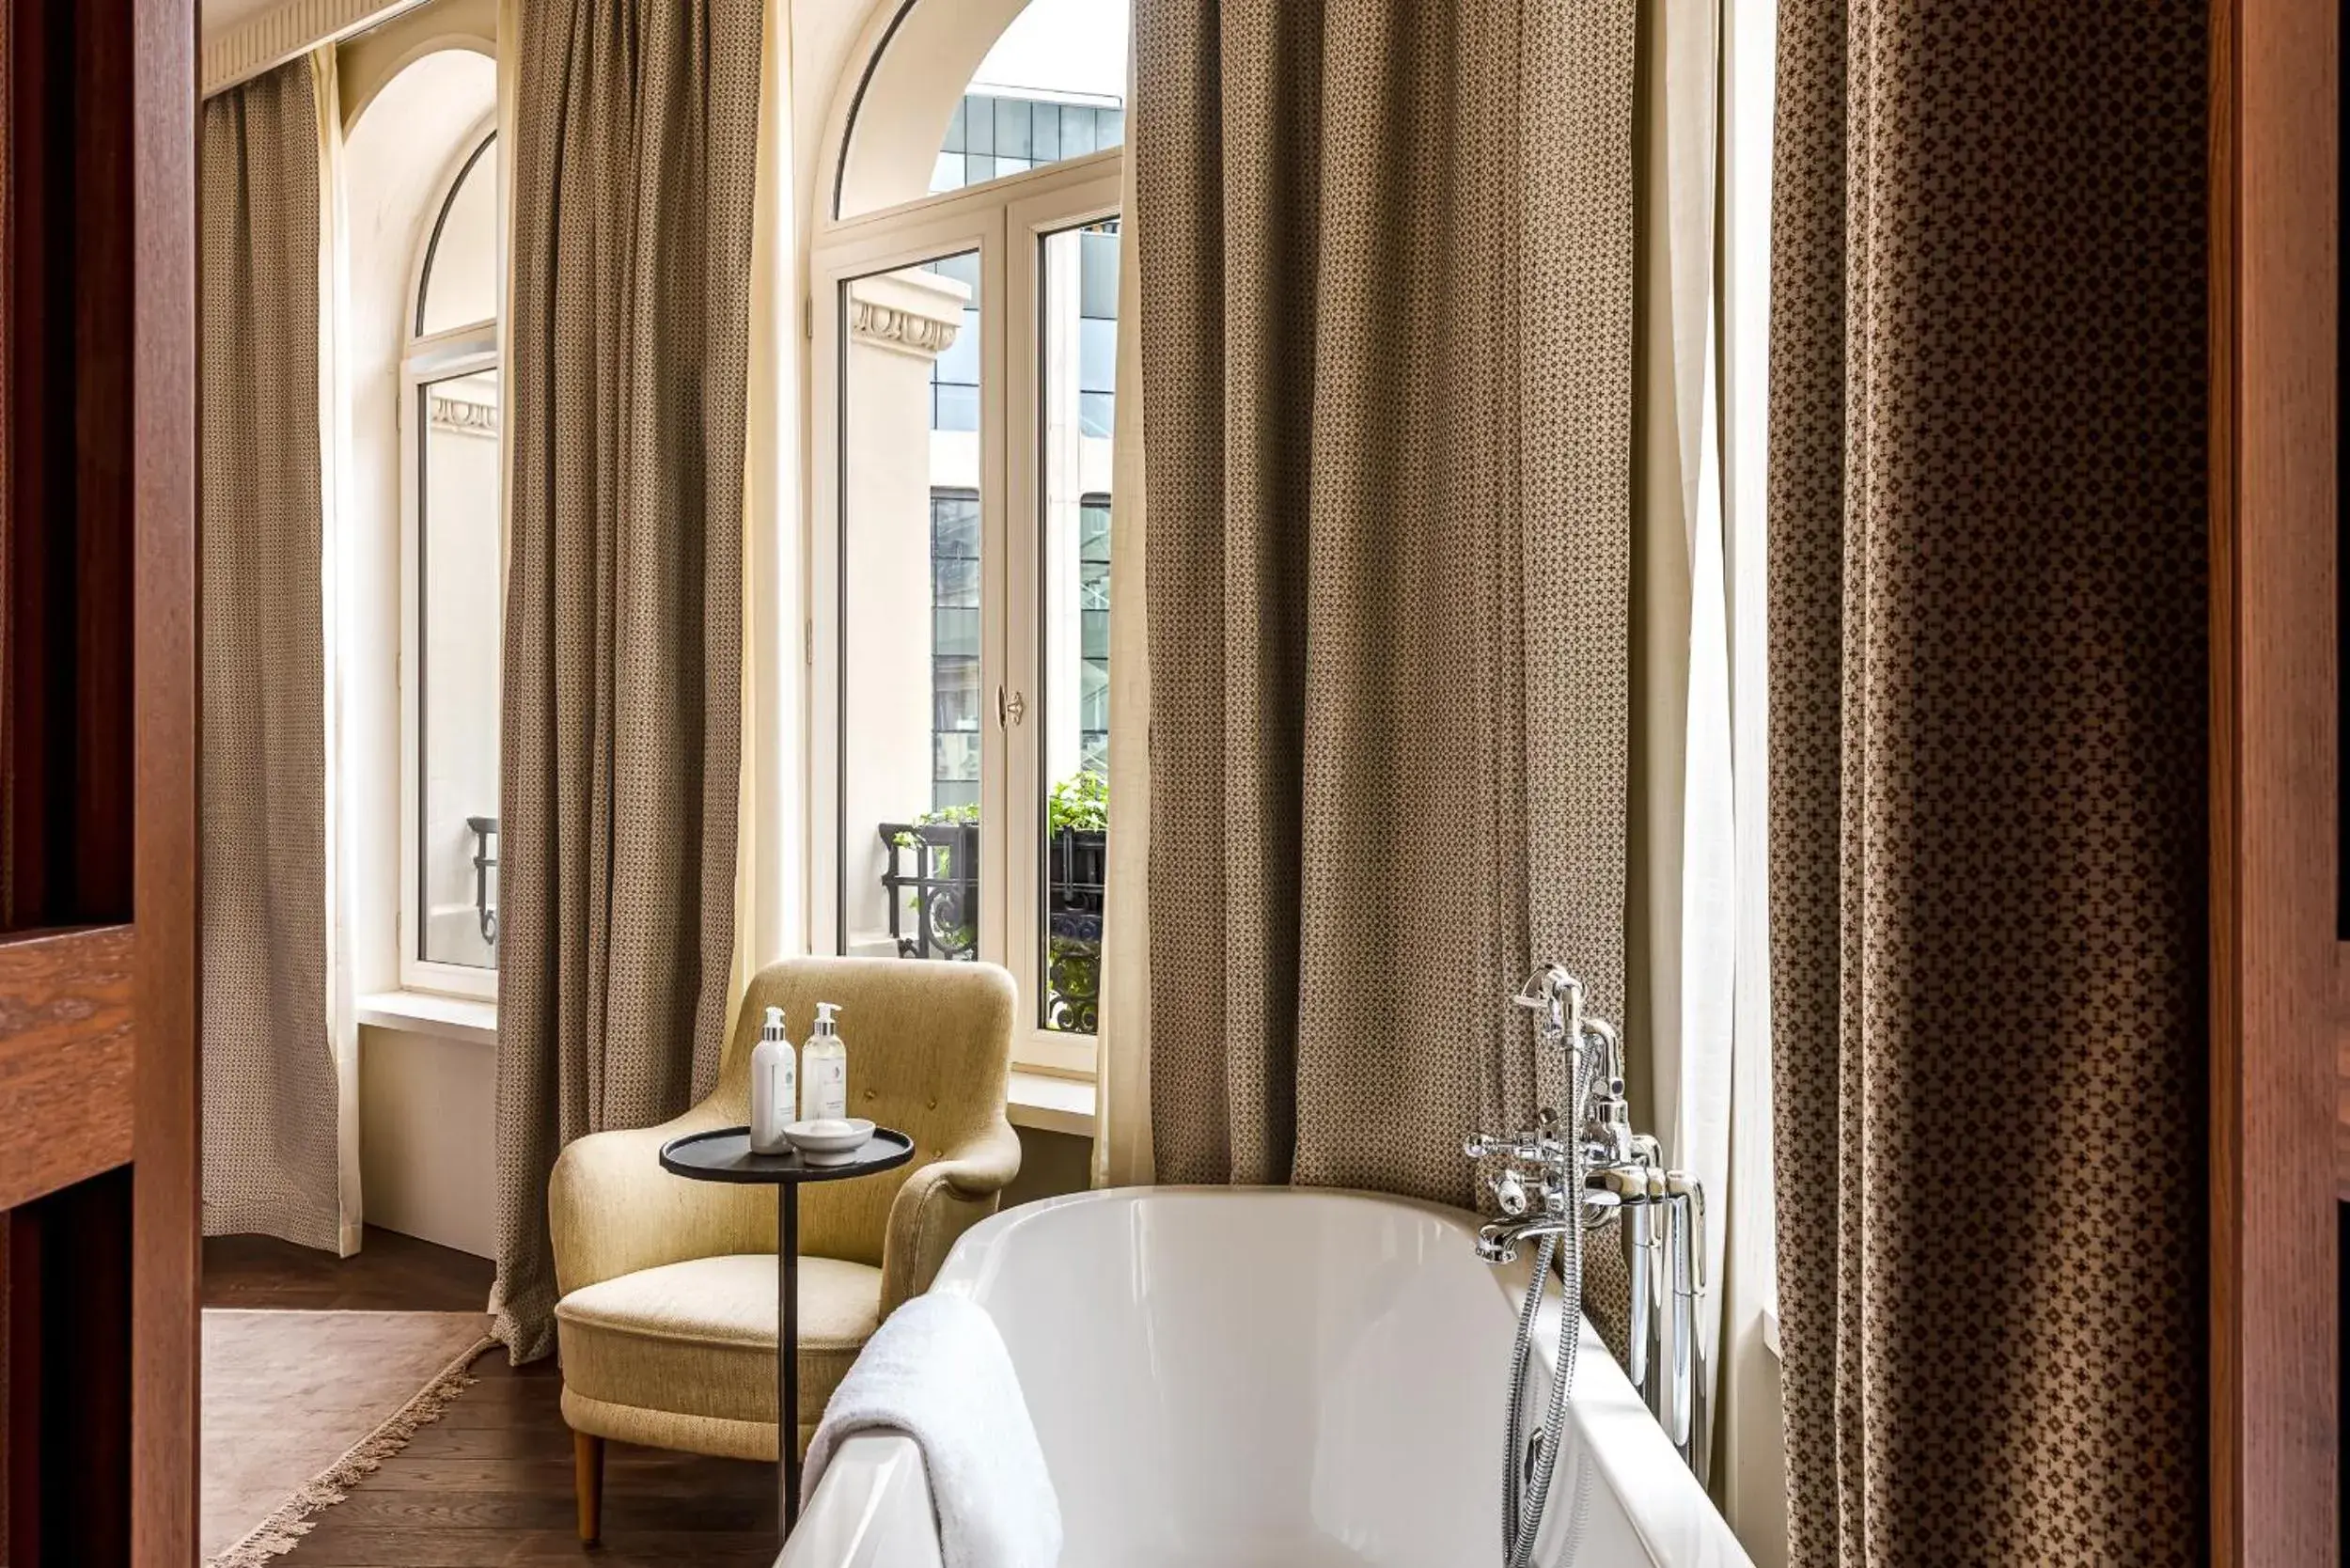 Bedroom, Bathroom in Château des Fleurs - Hôtel & Spa - Paris Champs-Elysées